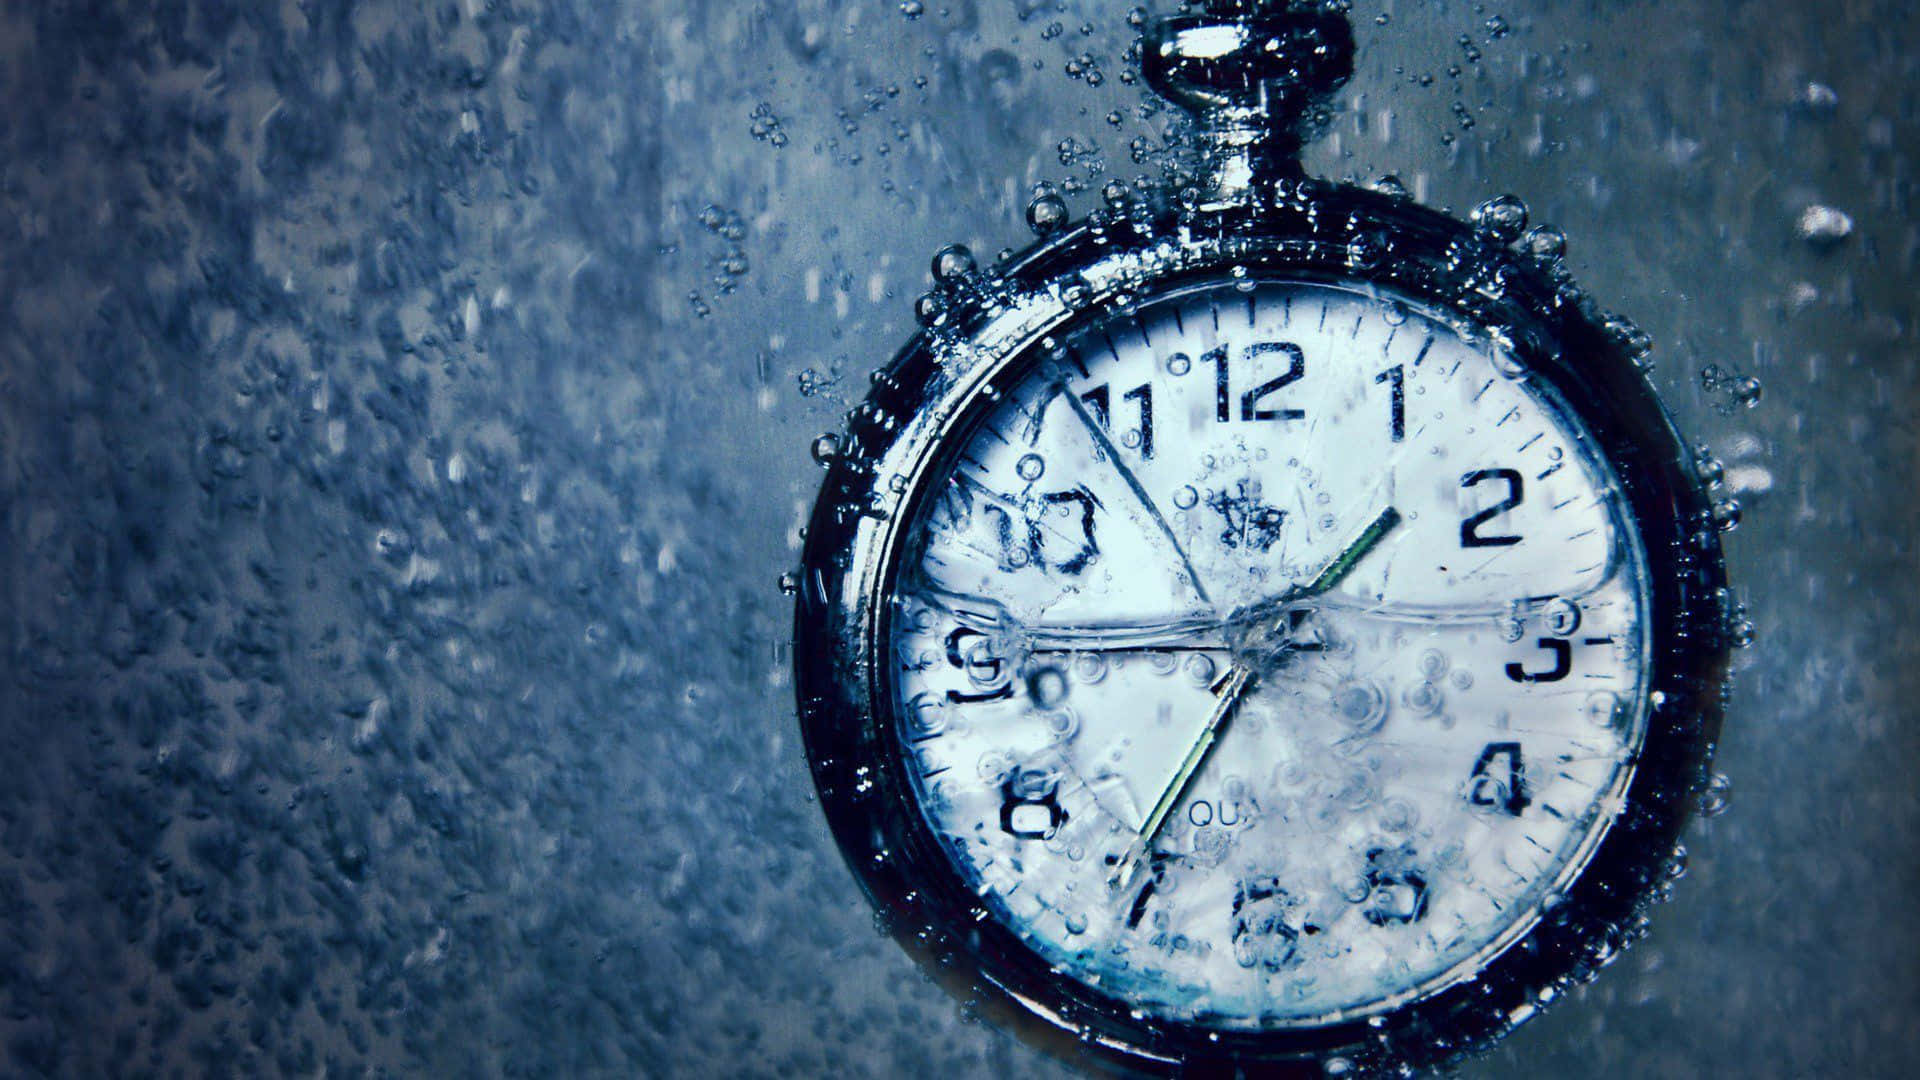 Relojde Tiempo Sumergido En Agua. Fondo de pantalla